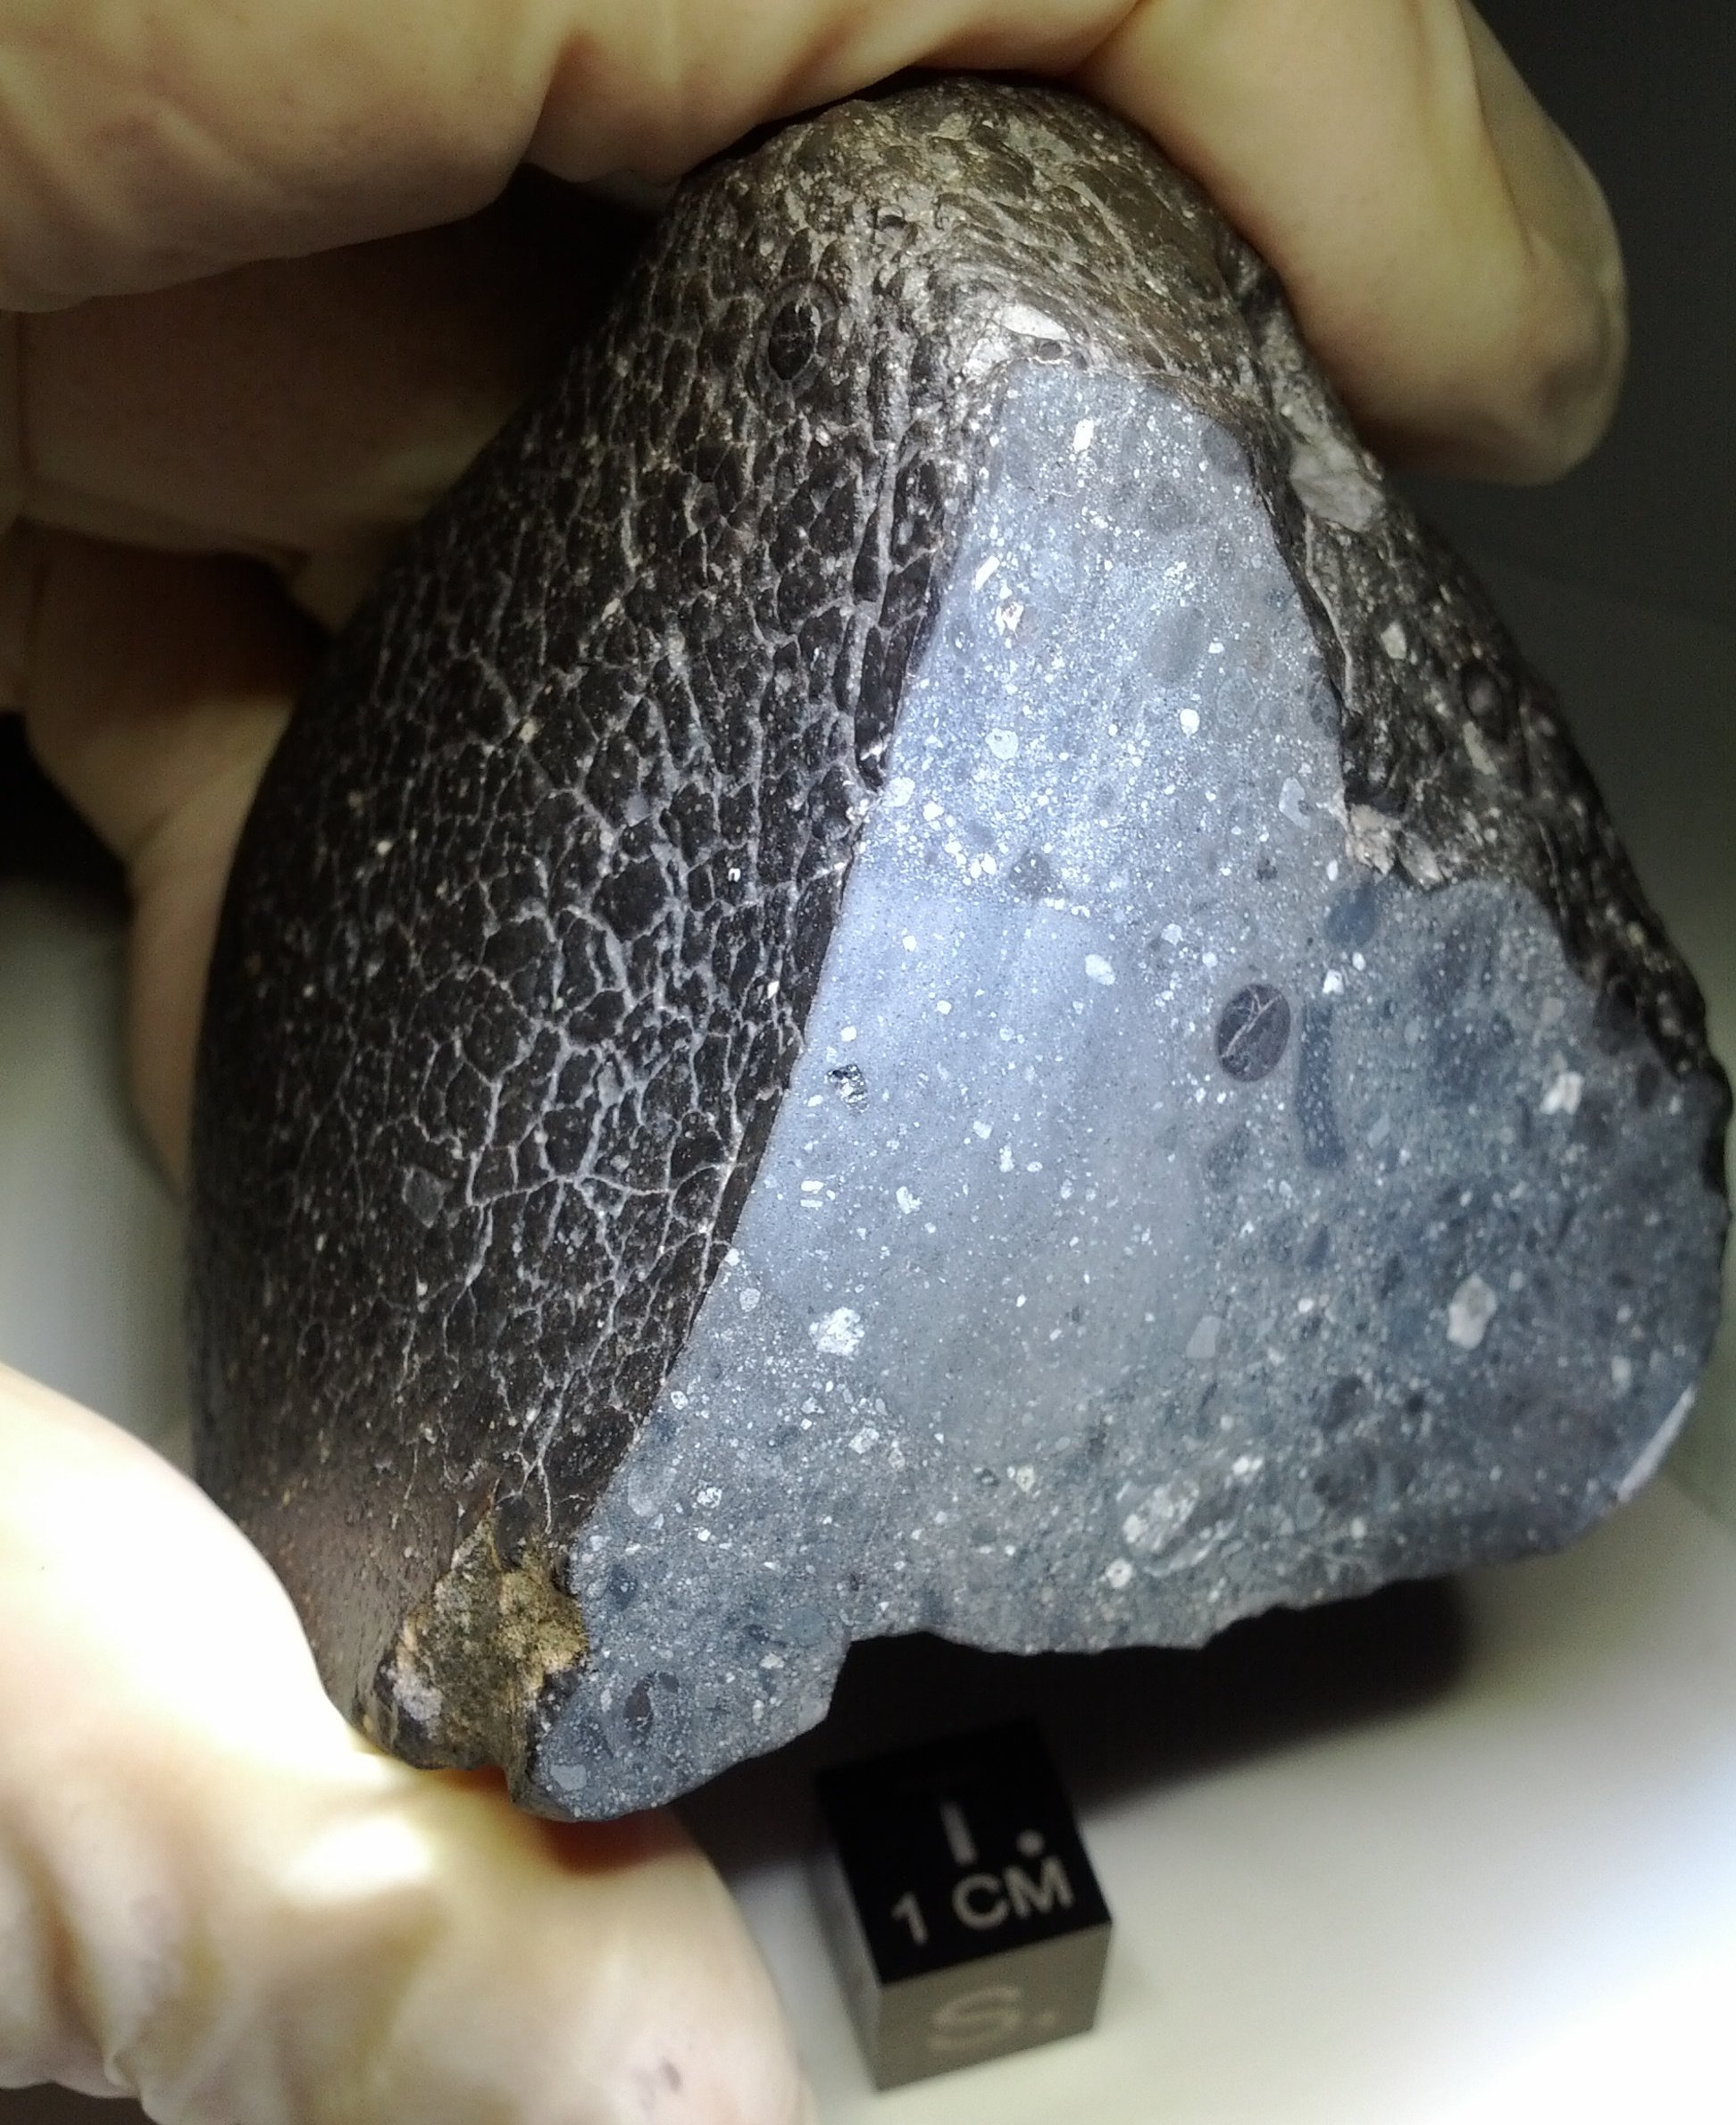 Базальтовые метеориты распространены в Солнечной системе. Этот образец с Марса - северо-западная Африка (NWA) 7034, получивший прозвище «Черная красавица» - имеет относительно большое количество воды в нем.